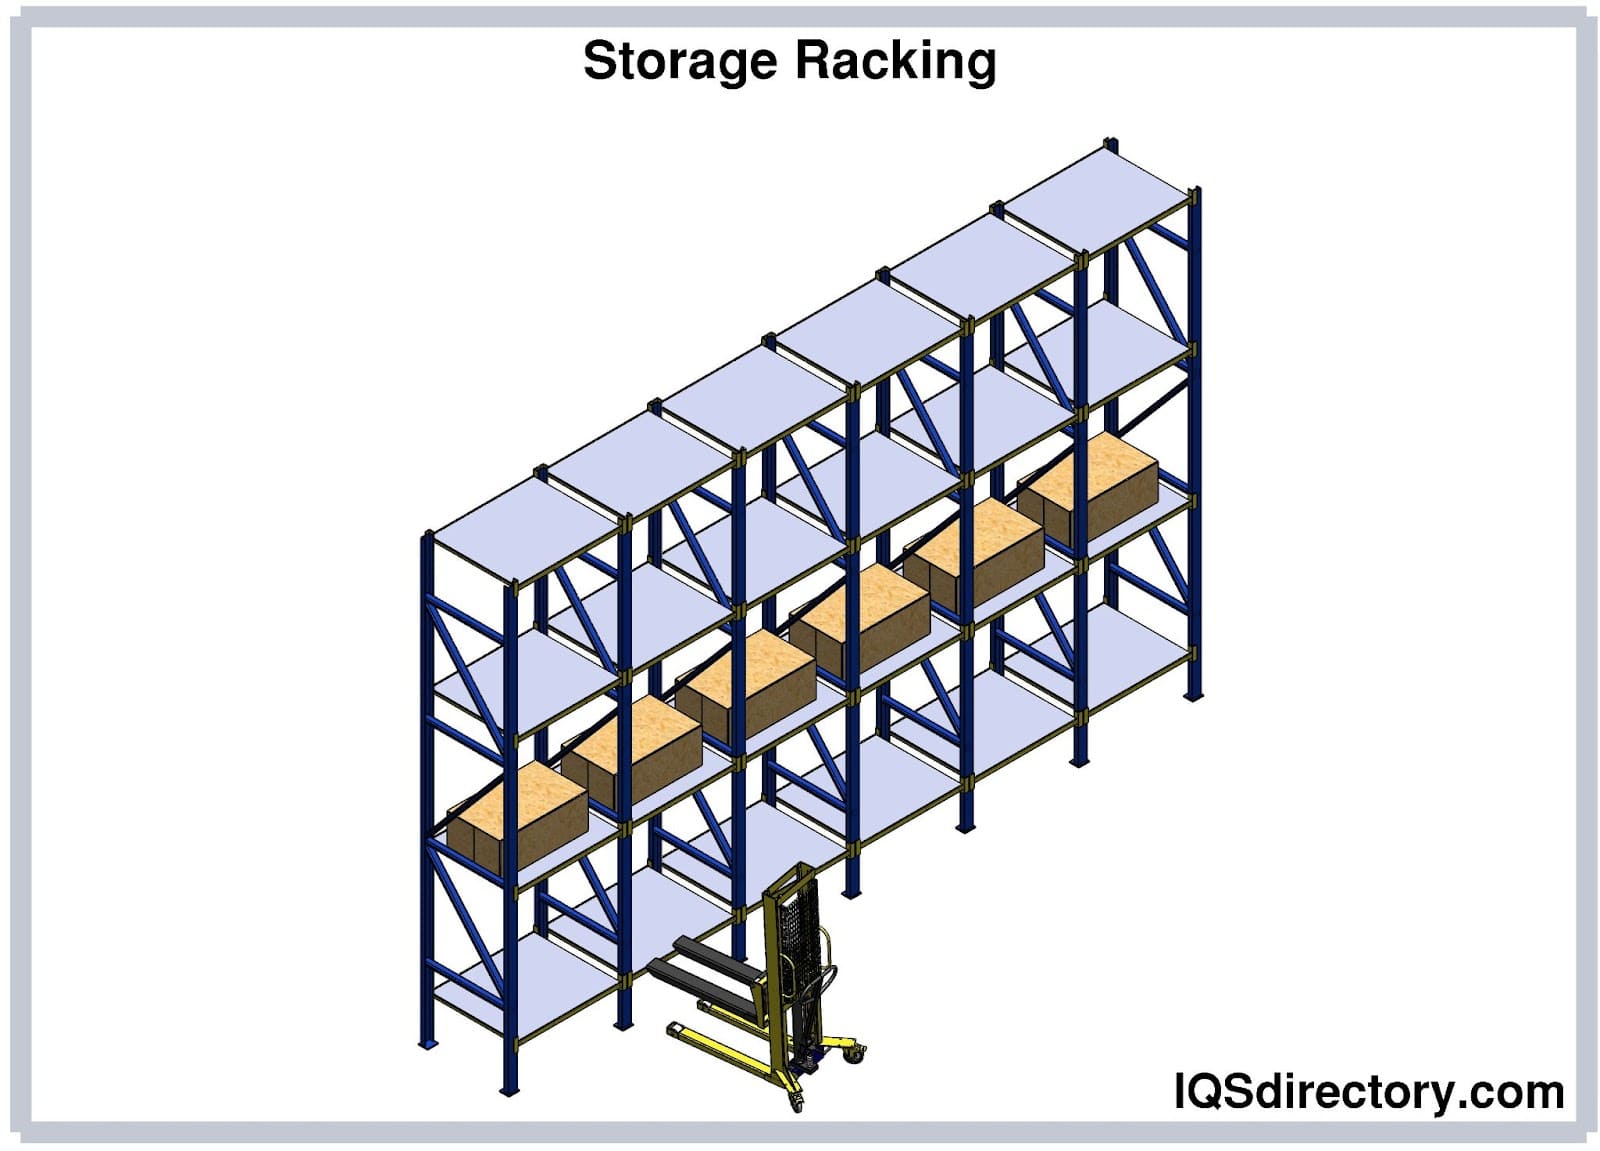 Storage Racking